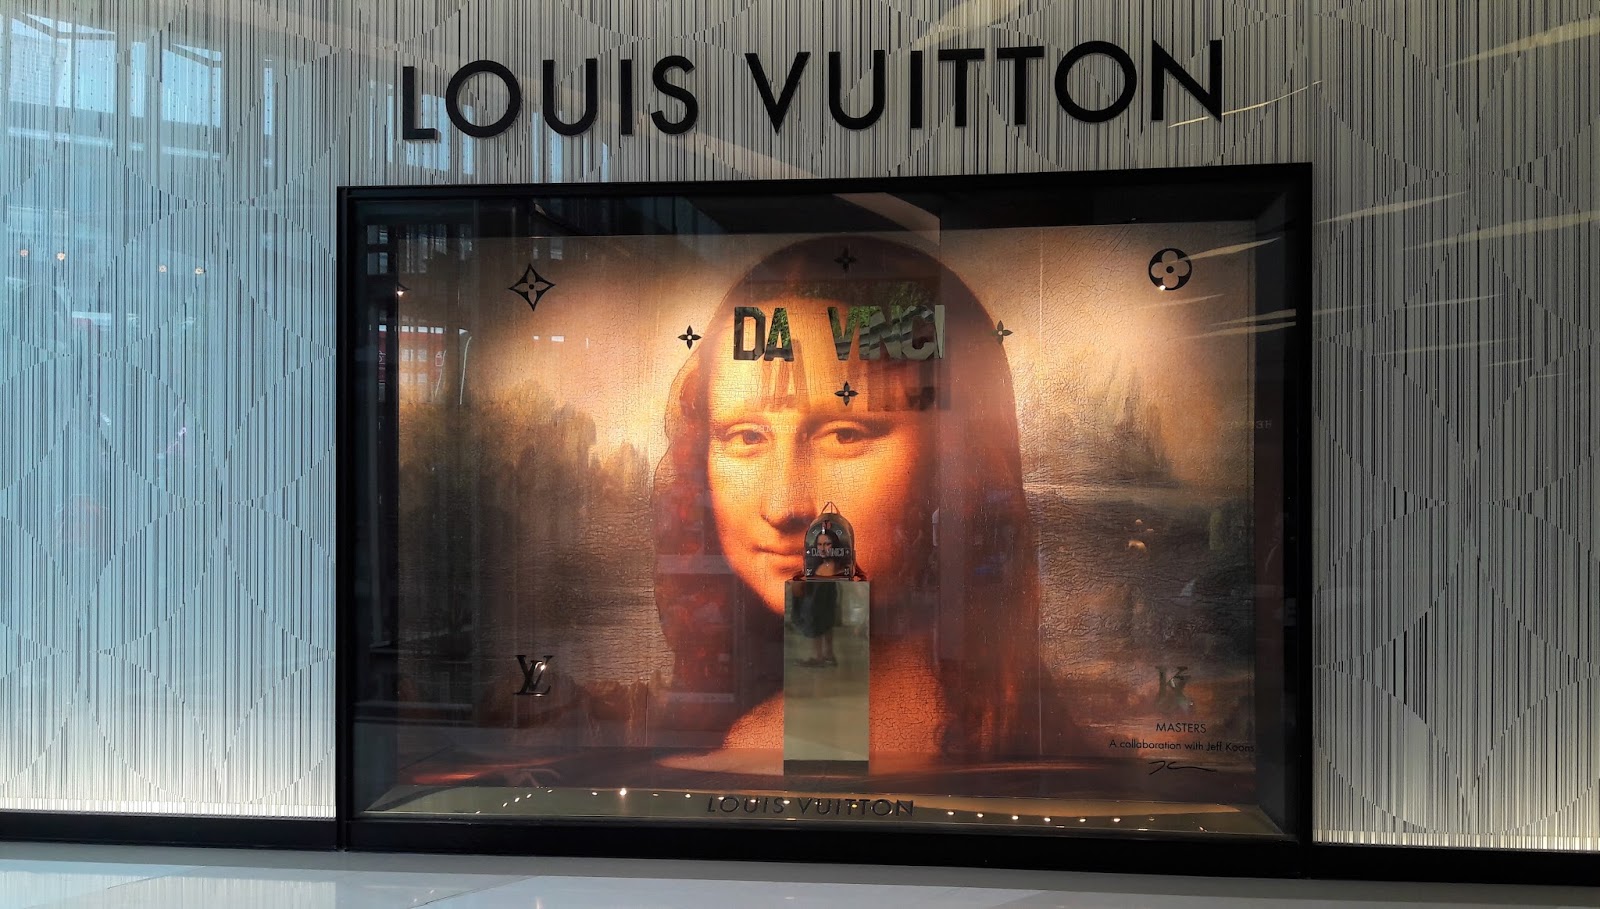 Louis Vuitton Shop at Siam Paragon, Bangkok, Thailand, May 9, 20